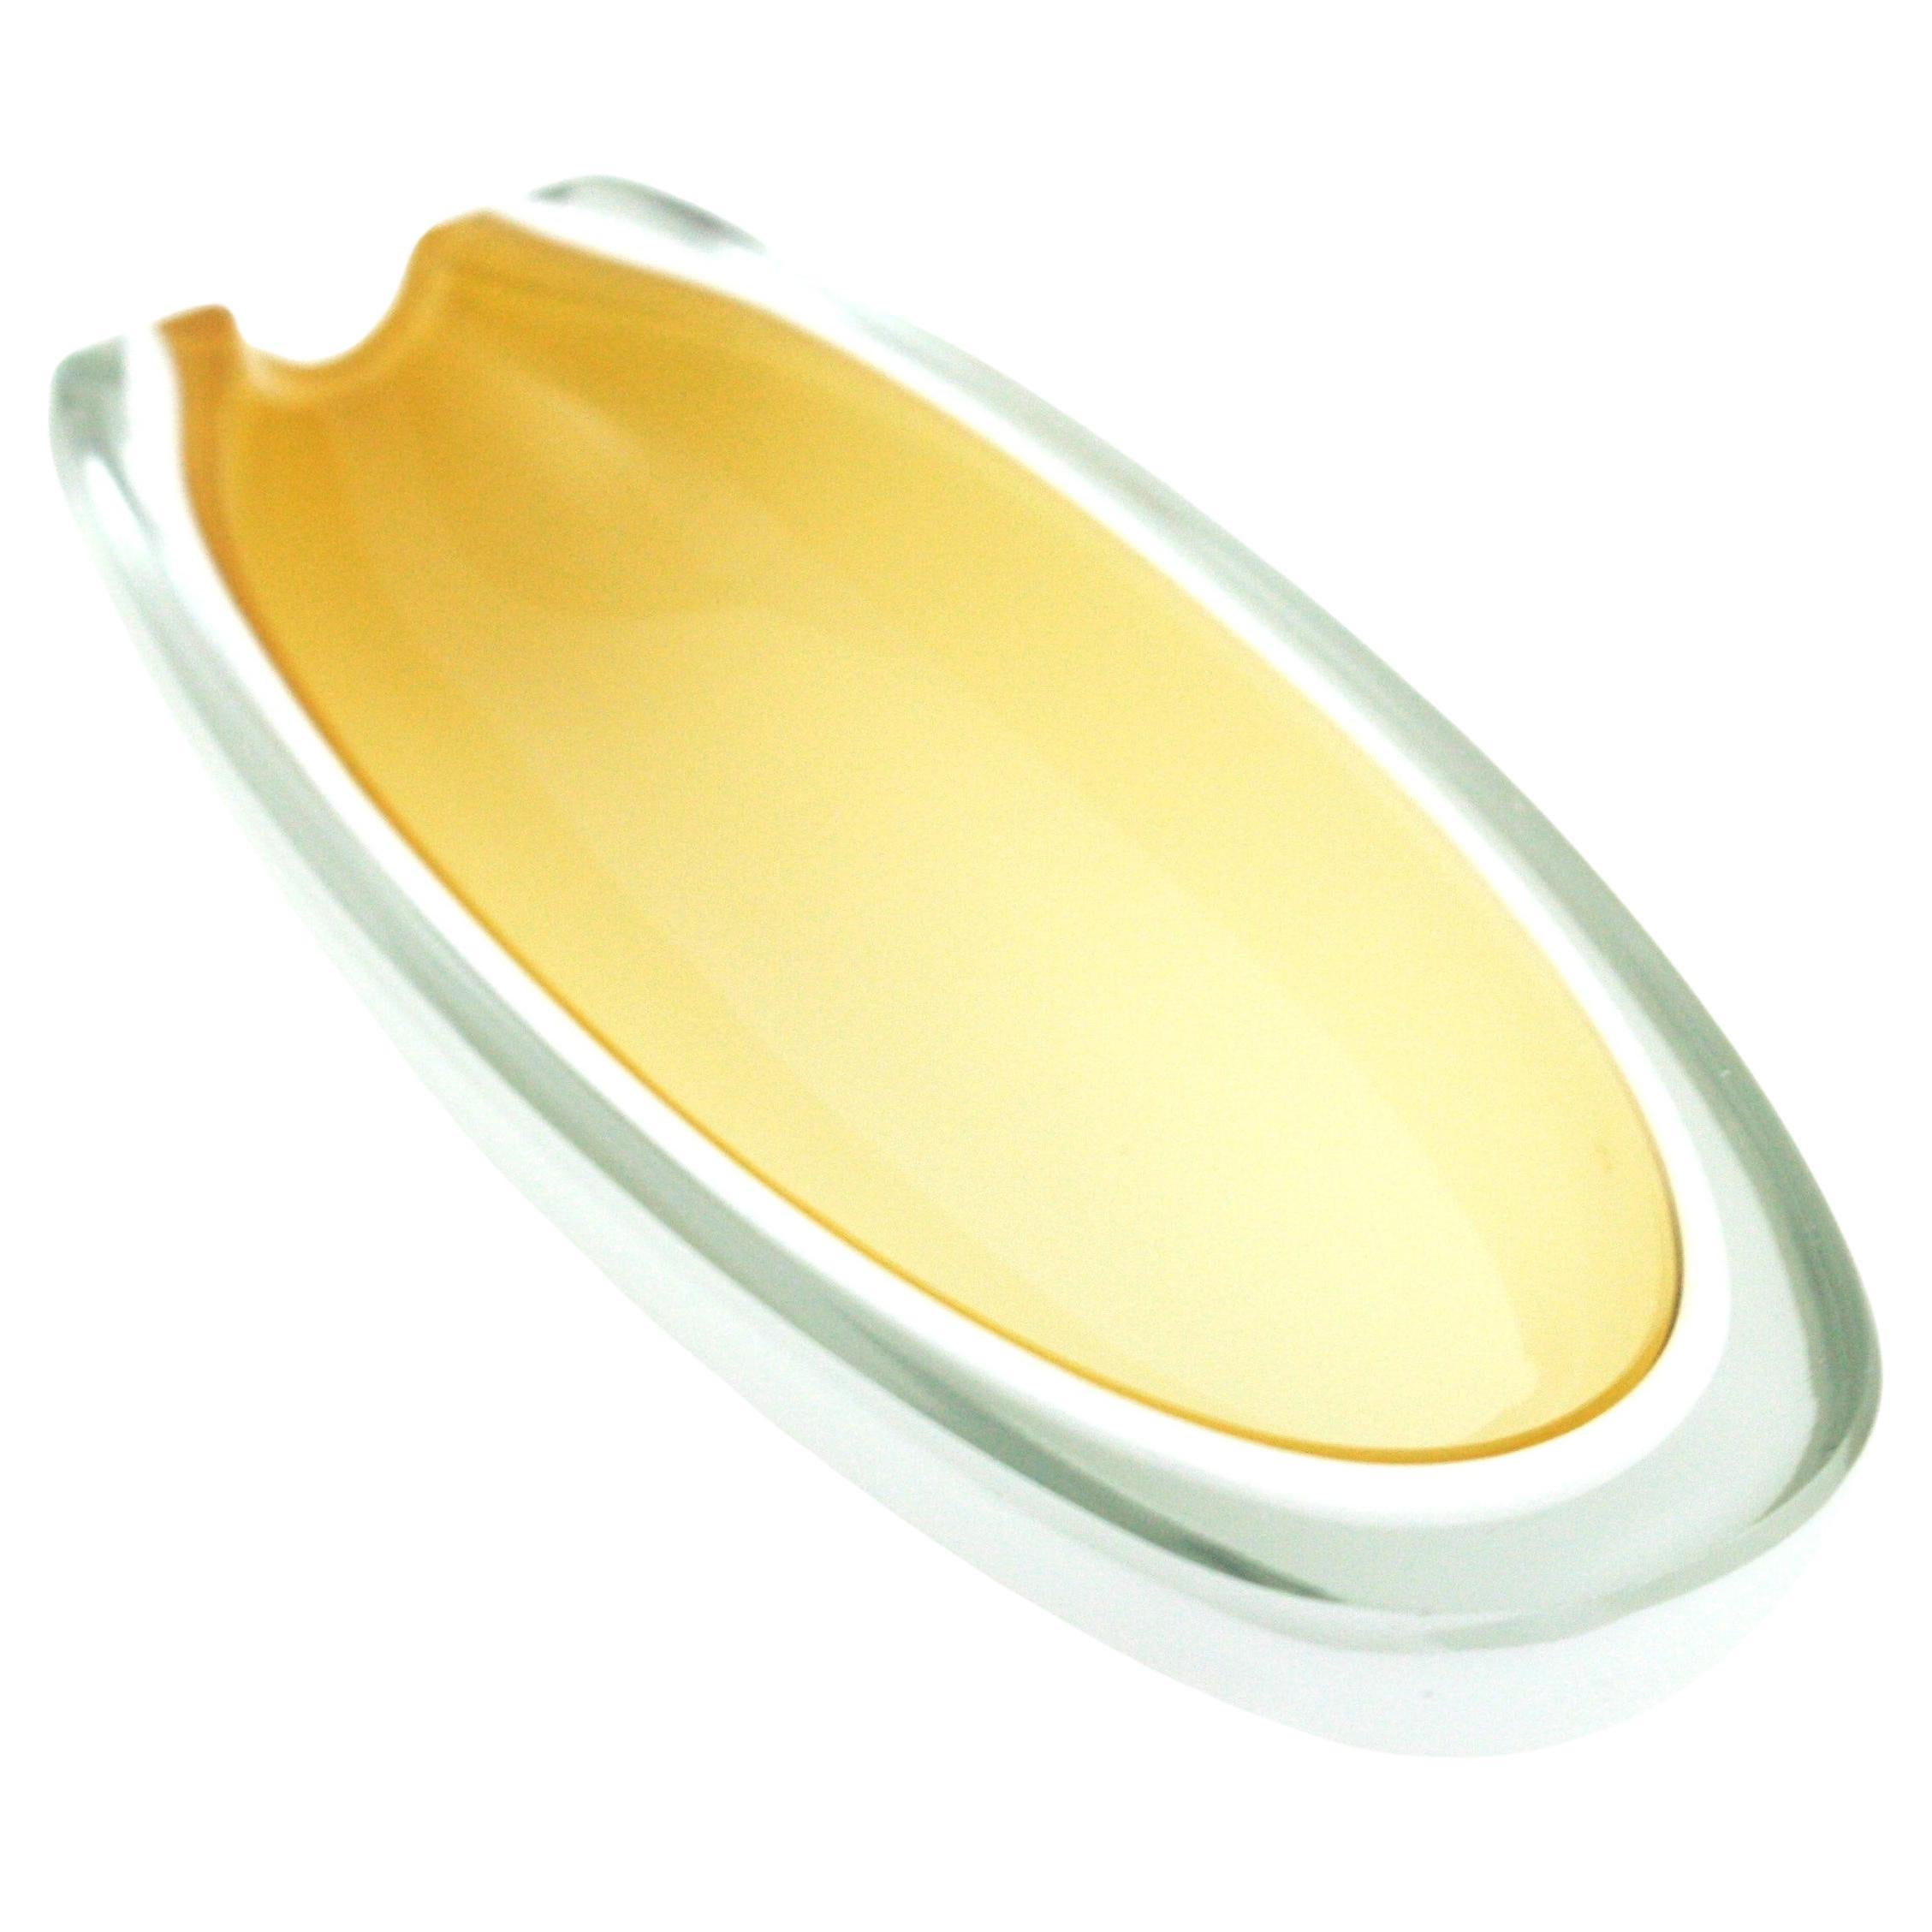 Archimede Seguso bol / cendrier Sommerso en verre de Murano avec géode ovale. Italie, années 1950-1960.
Belle forme allongée en verre alabastro jaune et blanc encastré dans du verre clair selon la technique du sommerso.
Dessus et côté coupés à